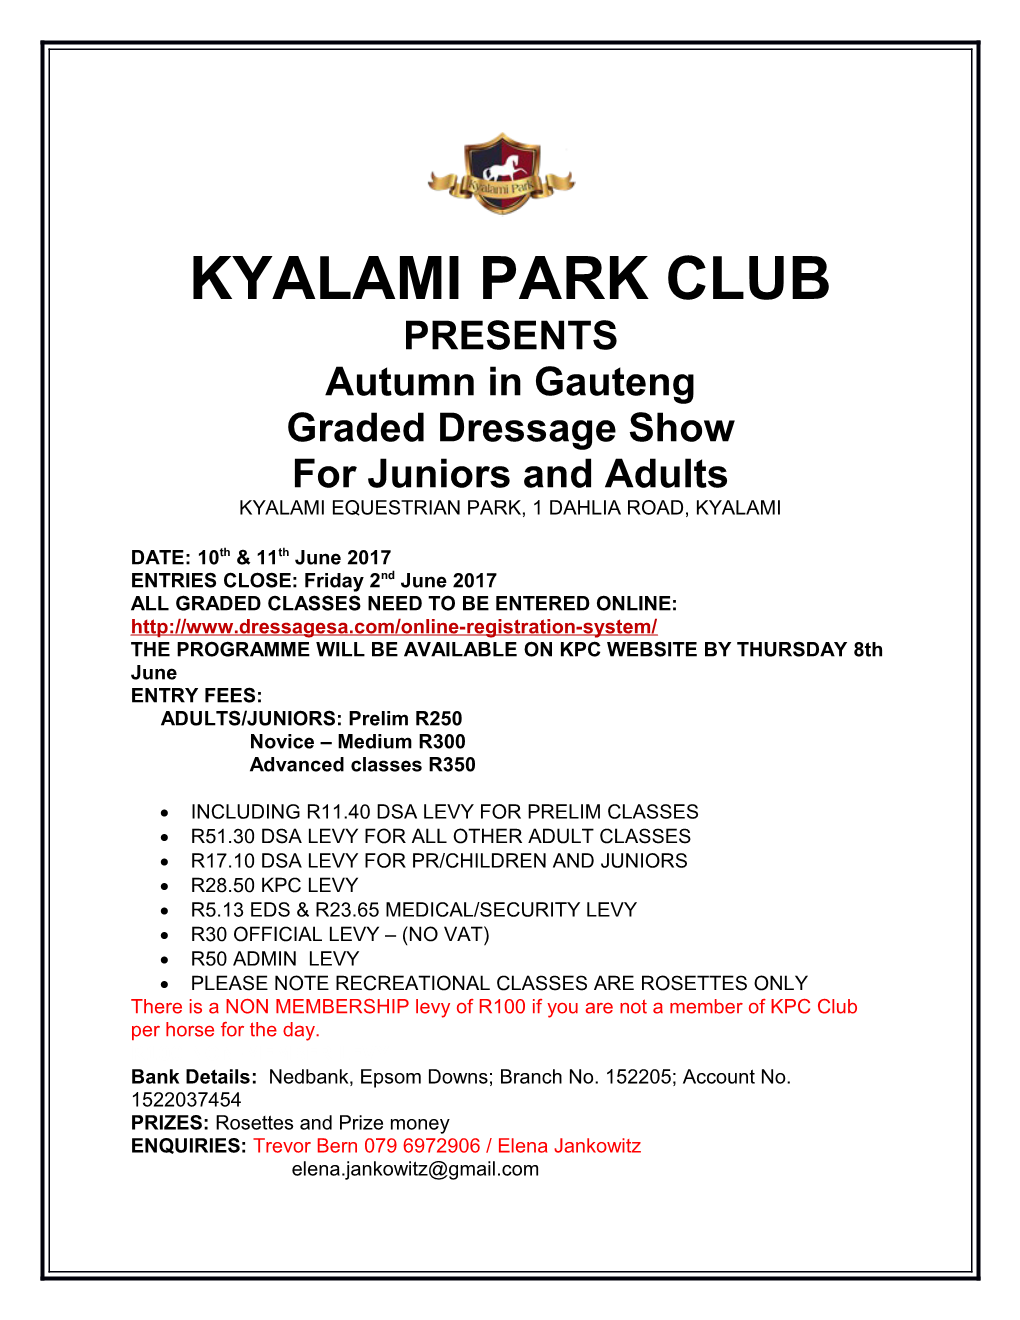 Kyalami Park Club